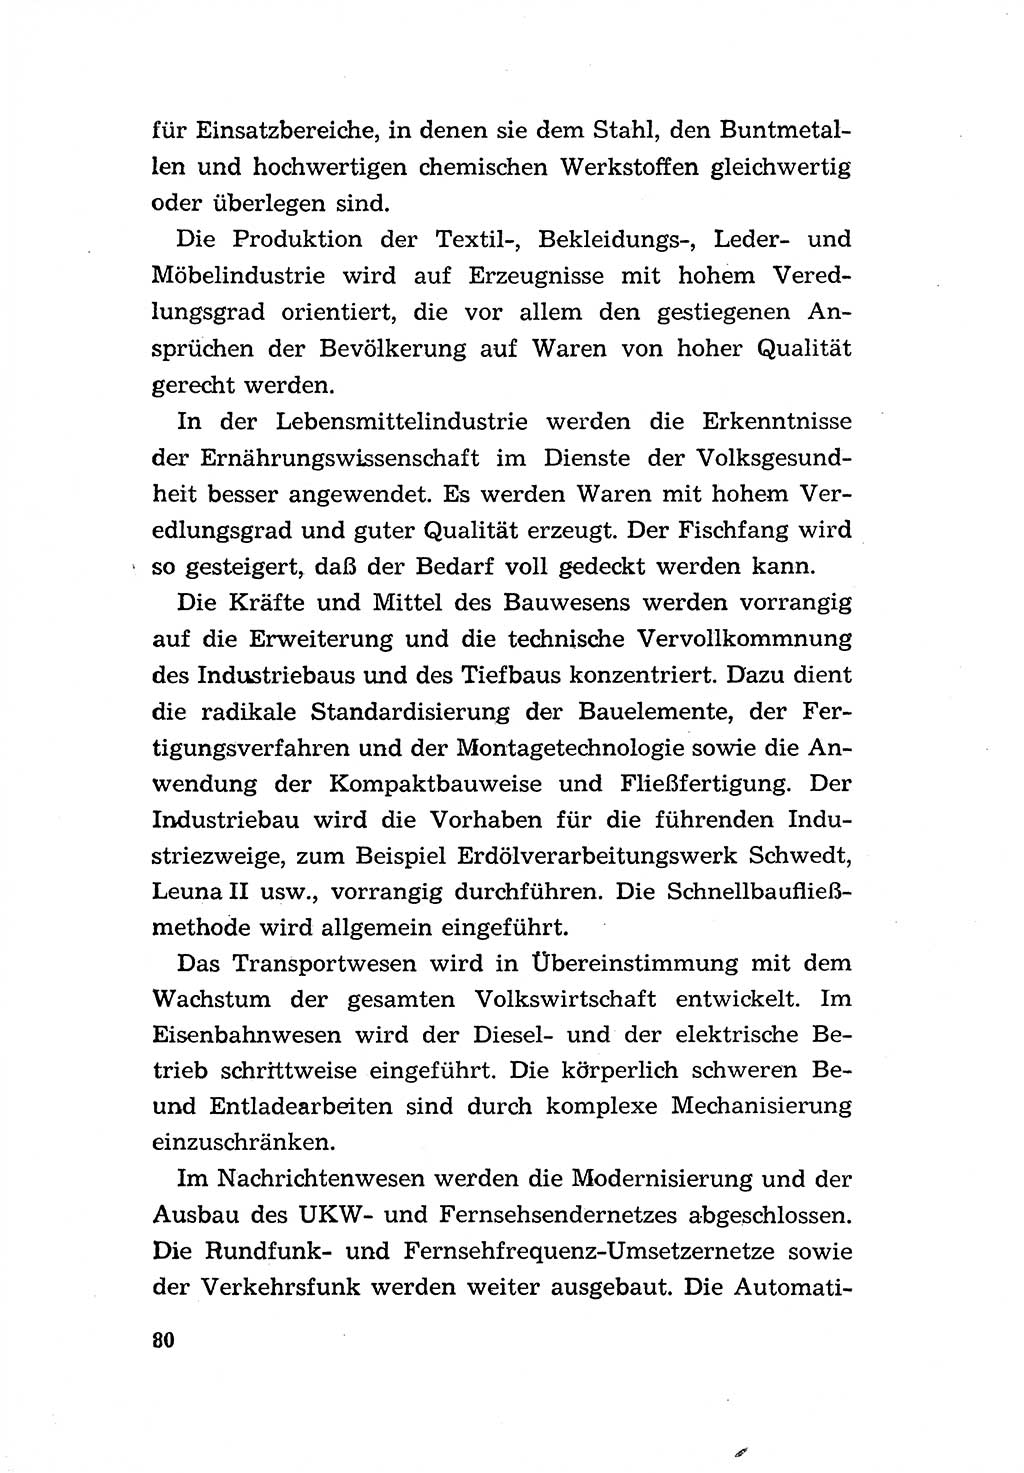 Programm der Sozialistischen Einheitspartei Deutschlands (SED) [Deutsche Demokratische Republik (DDR)] 1963, Seite 80 (Progr. SED DDR 1963, S. 80)